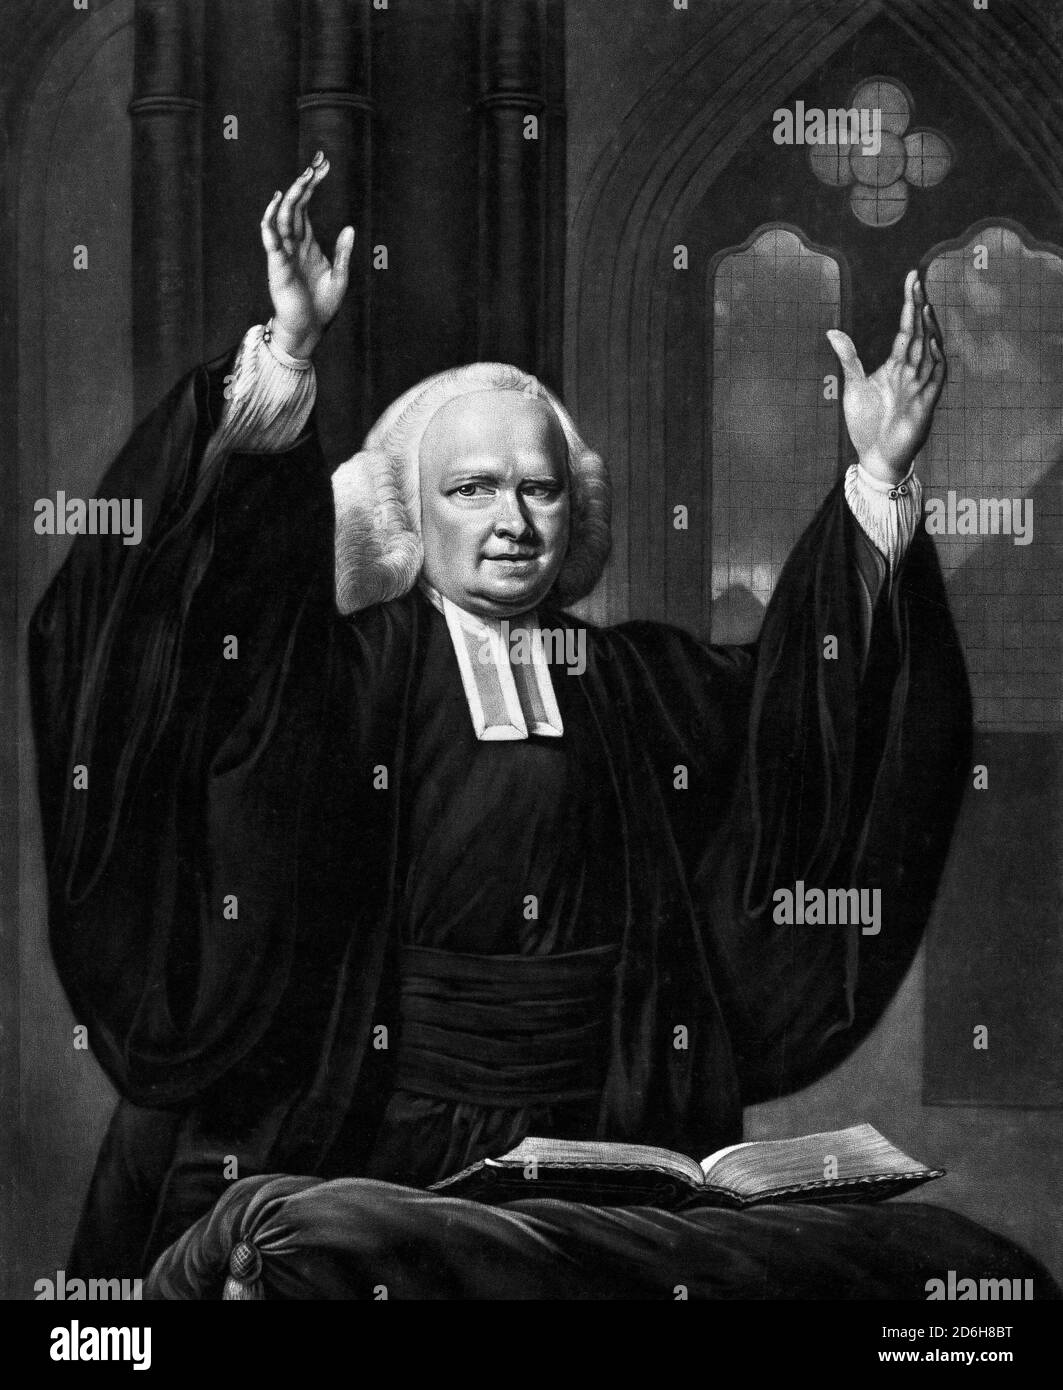 George Whitefield. Porträt des anglikanischen Geistlichen, Reverend George Whitefield (1714-1770) Predigerin, Druck von John Greenwood, nach Nathaniel Hone, um 1759-1770. Whitefield war einer der Gründer der Methodisten und der evangelischen Bewegung. Stockfoto